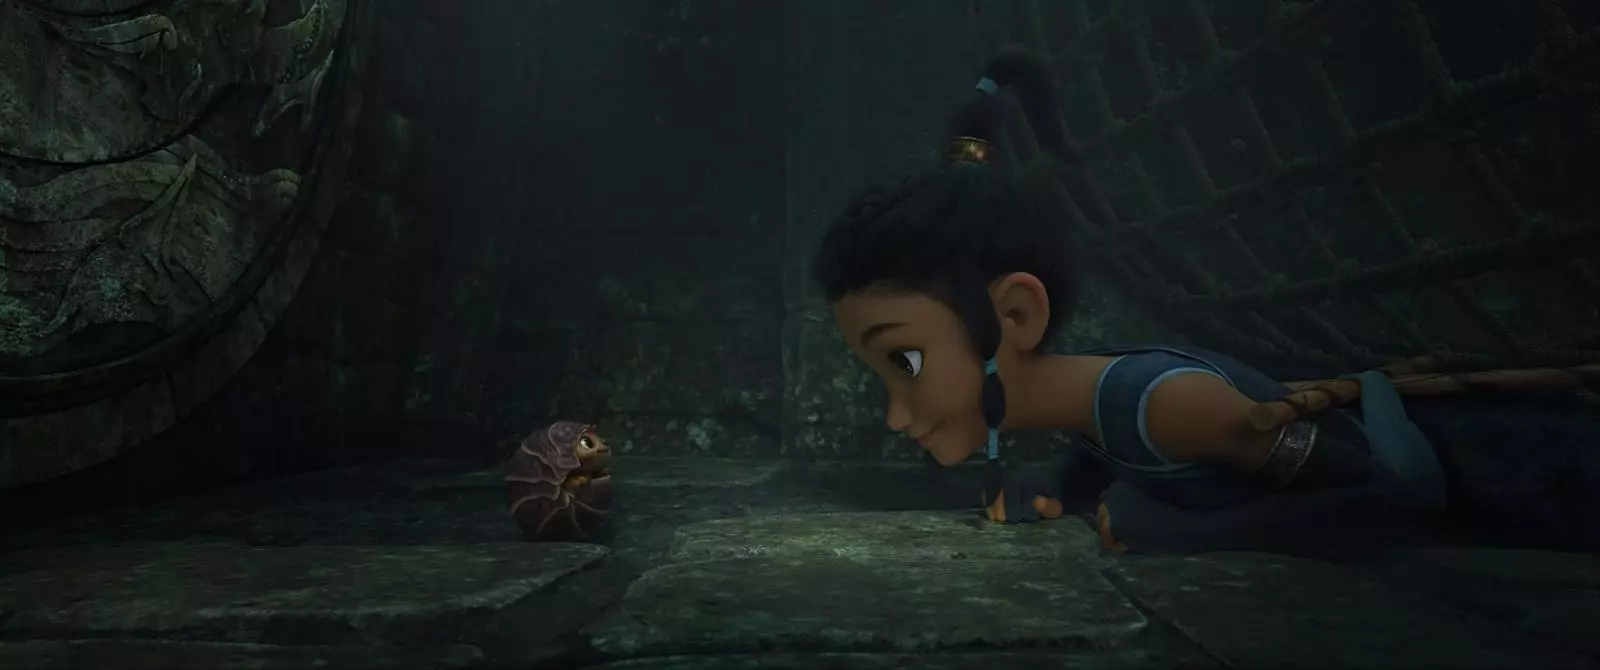 Lara Croft iraruhukira: Trailer ya mbere ya Cartoon 